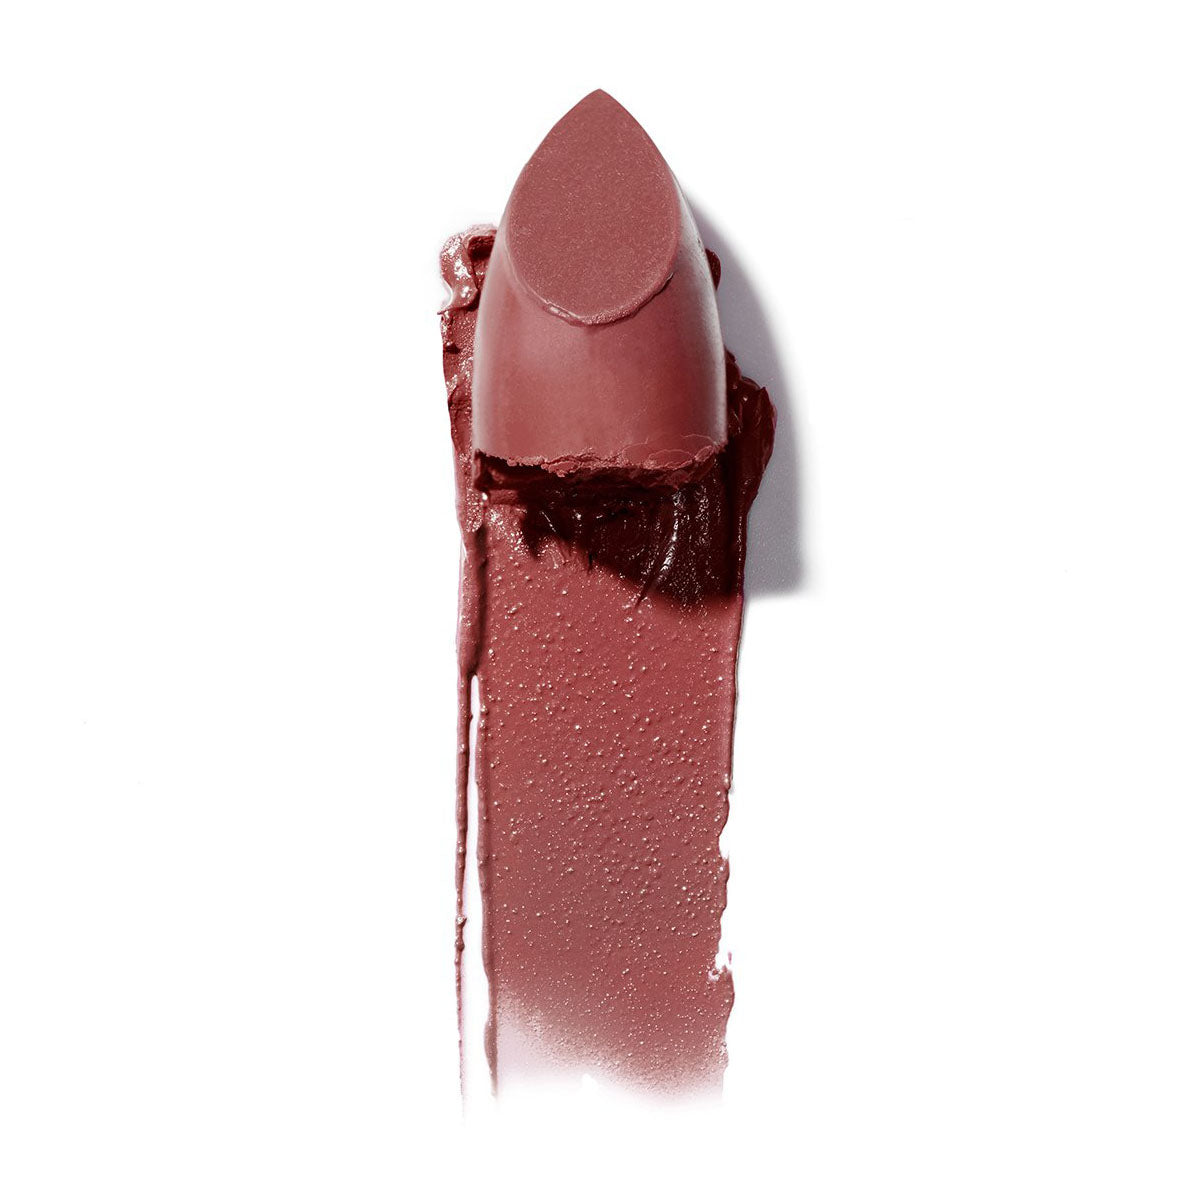 Alternate image of Color Block Lipstick in Rococco